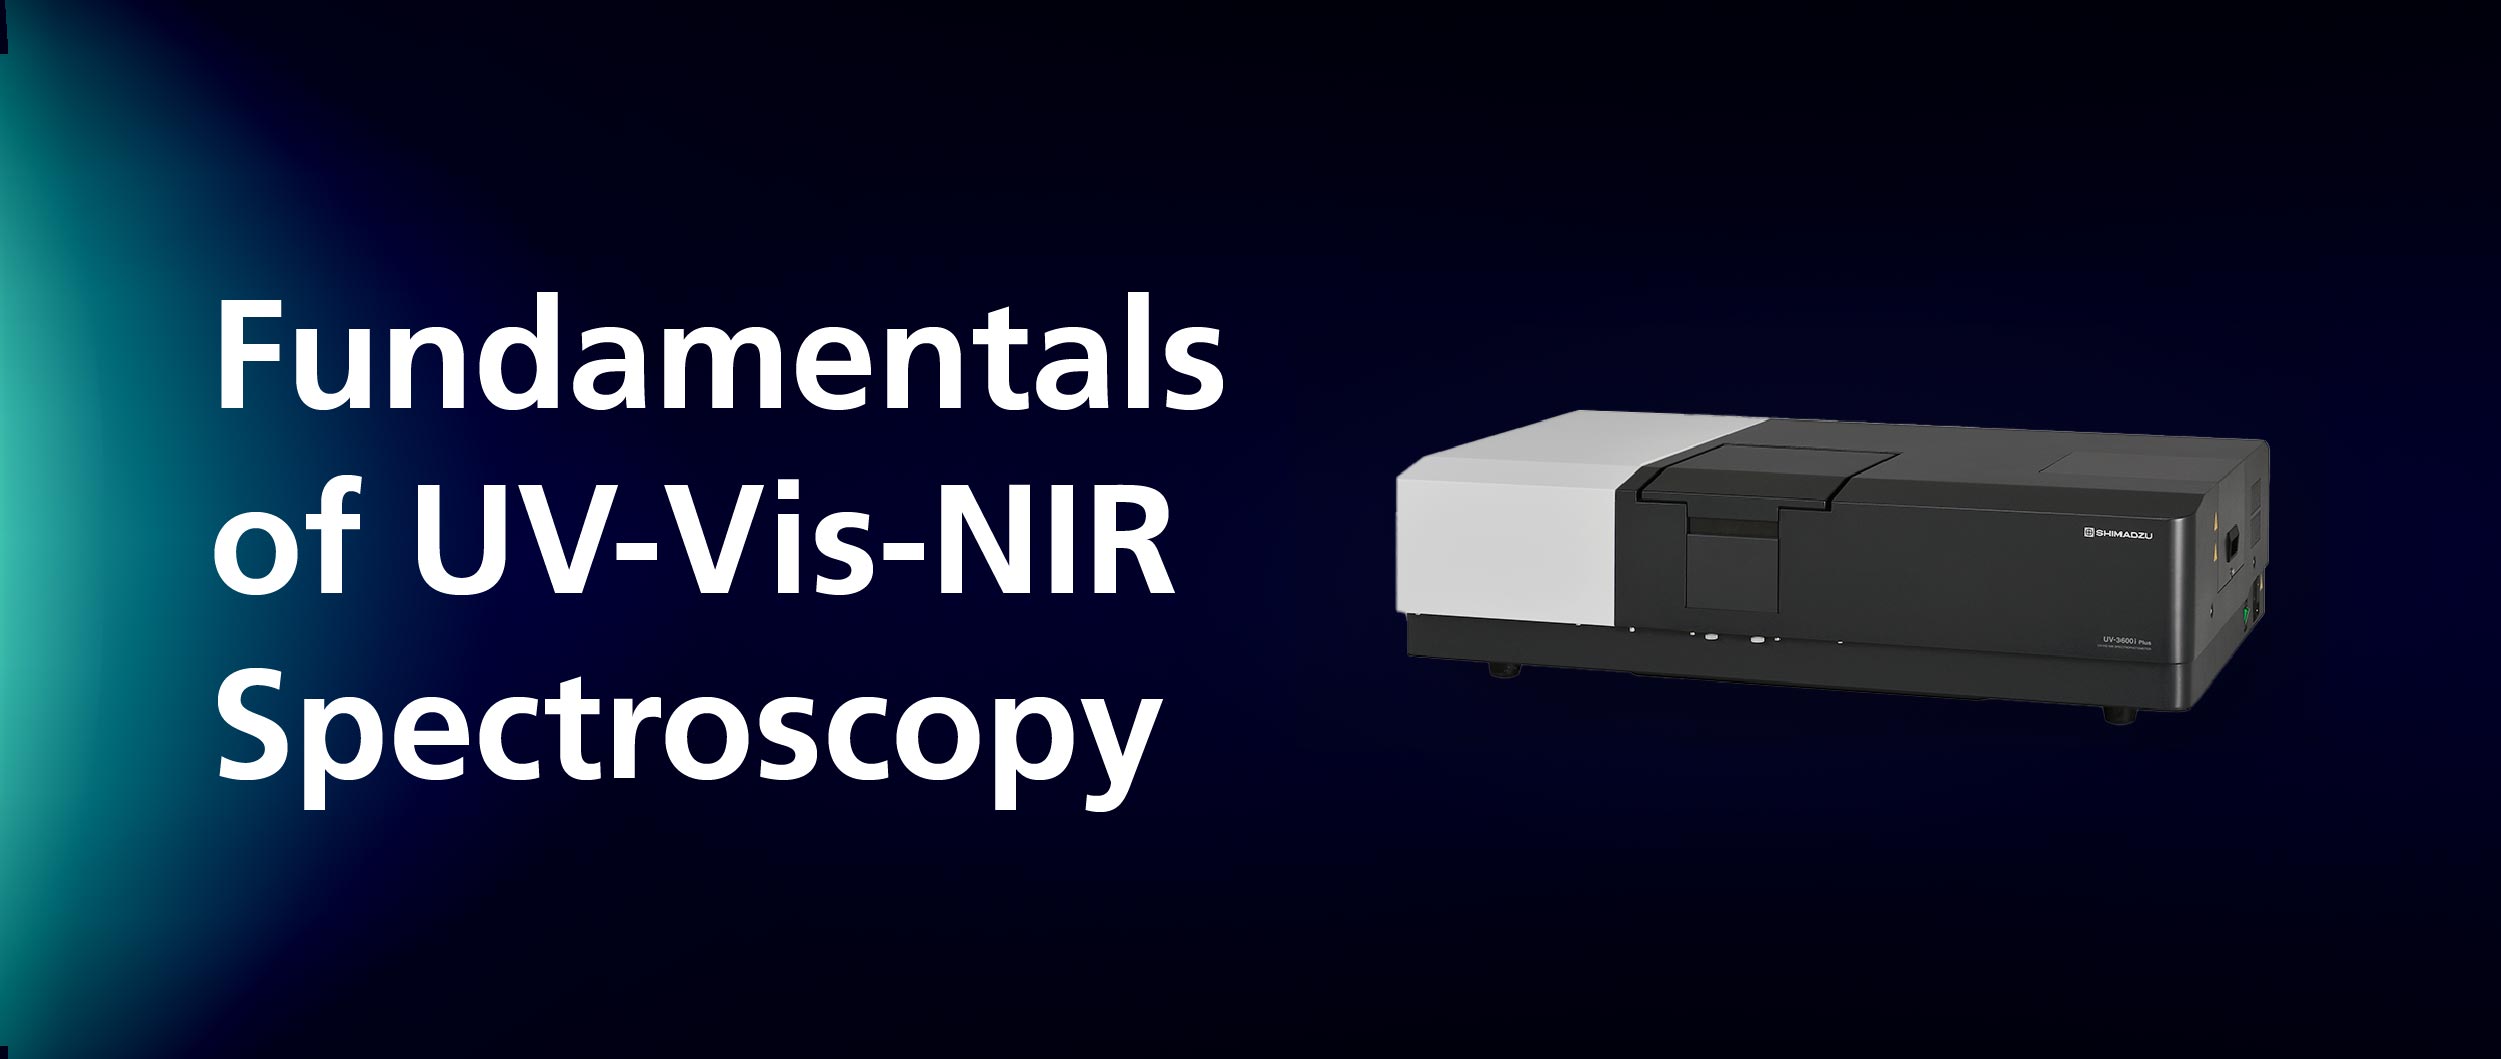 Fundamentals of UV-Vis-NIR Spectroscopy